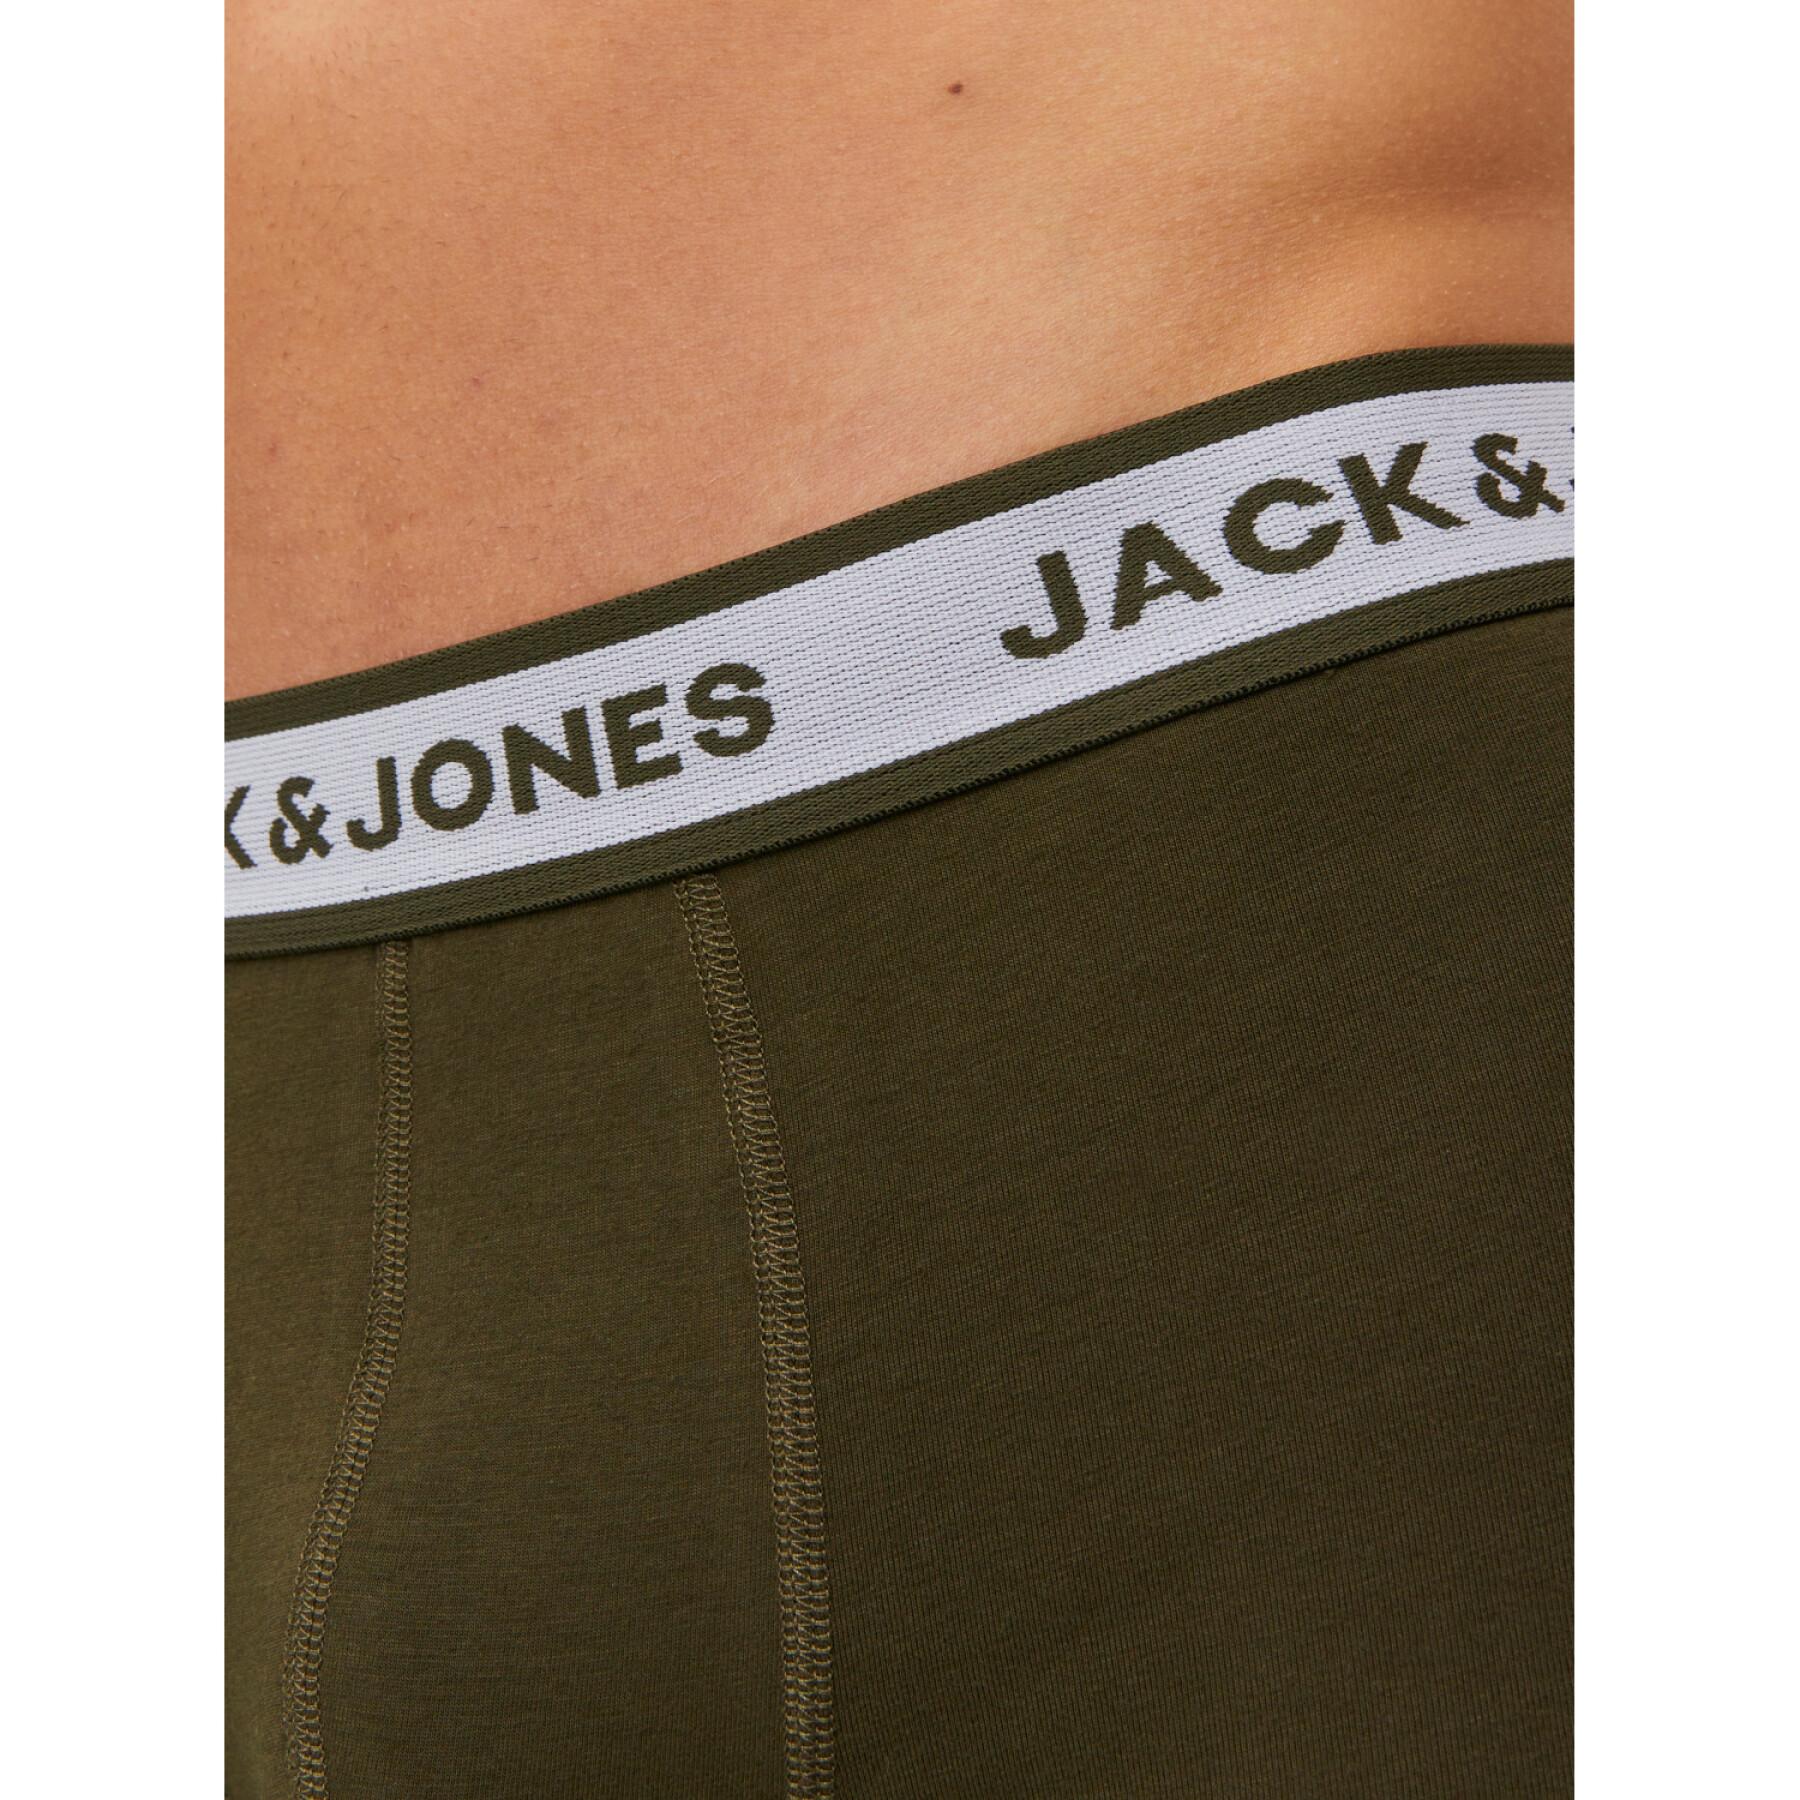 Set van 5 boxers Jack & Jones solid LN